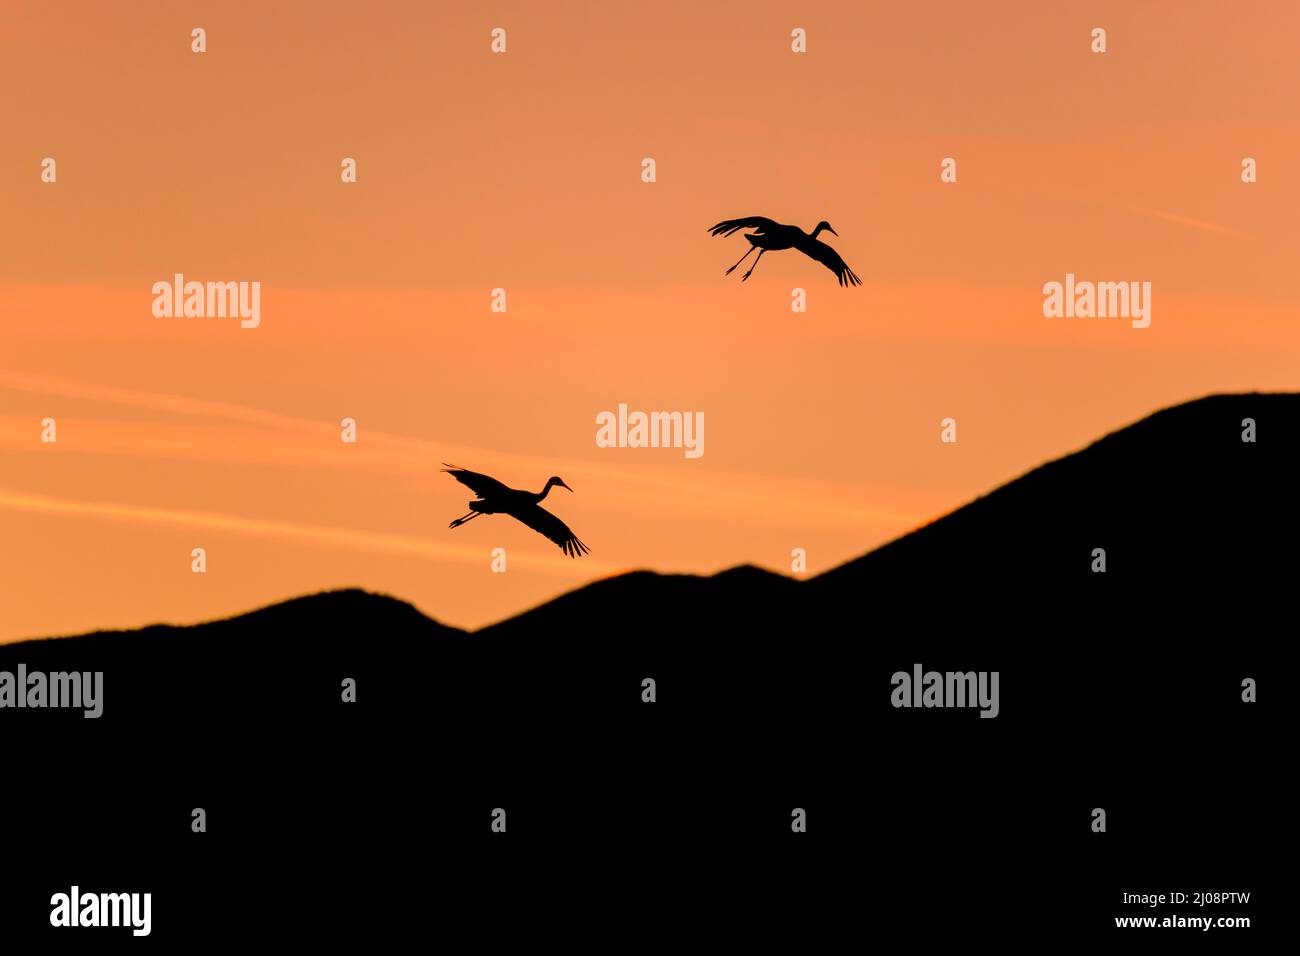 Vol dans le ciel du soir - une paire de grue Sandhill Crane volant dans un ciel de crépuscule coloré au-dessus de collines ondulantes. Nouveau-Mexique, États-Unis. Banque D'Images